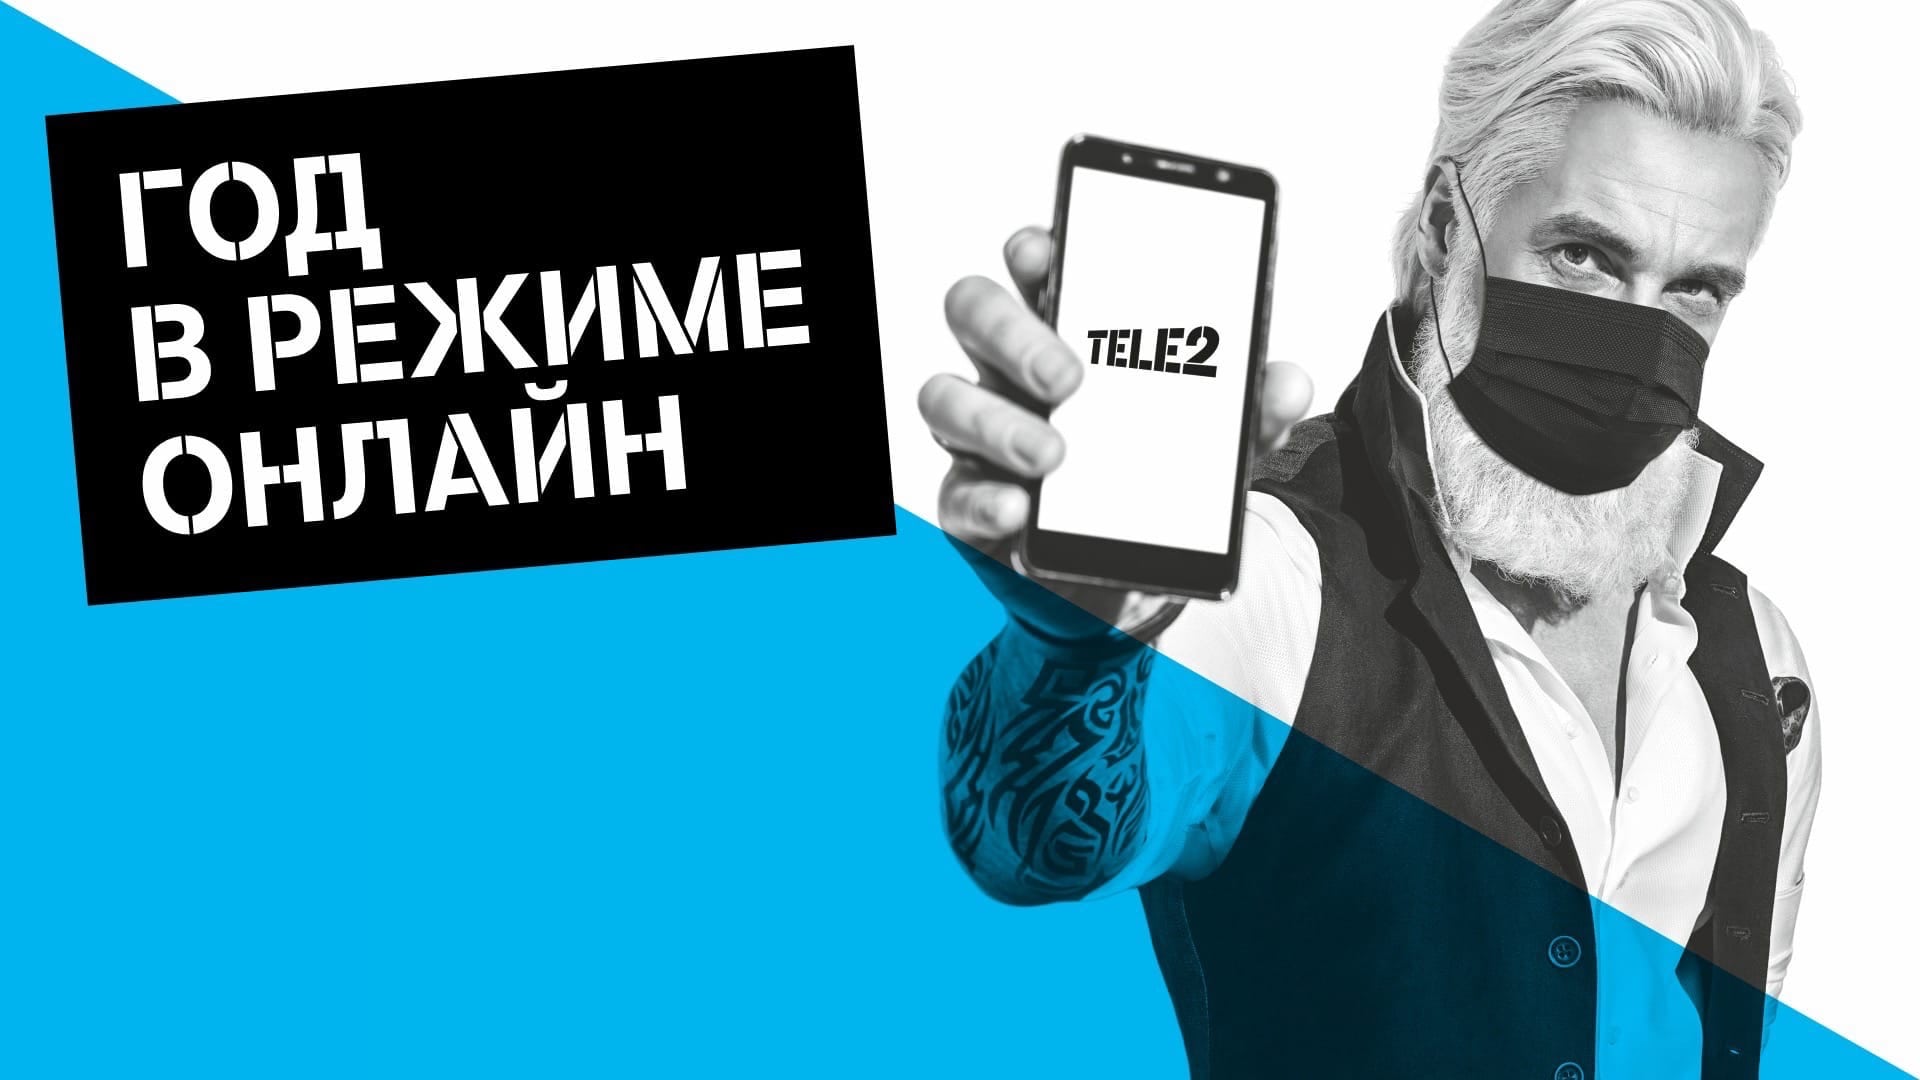 Tele2, ИТ и телеком, регистрация онлайн общение социальные сети Самостоятельная регистрация и больше общения в соцсетях.Tele2 подвела итоги года в режиме онлайн